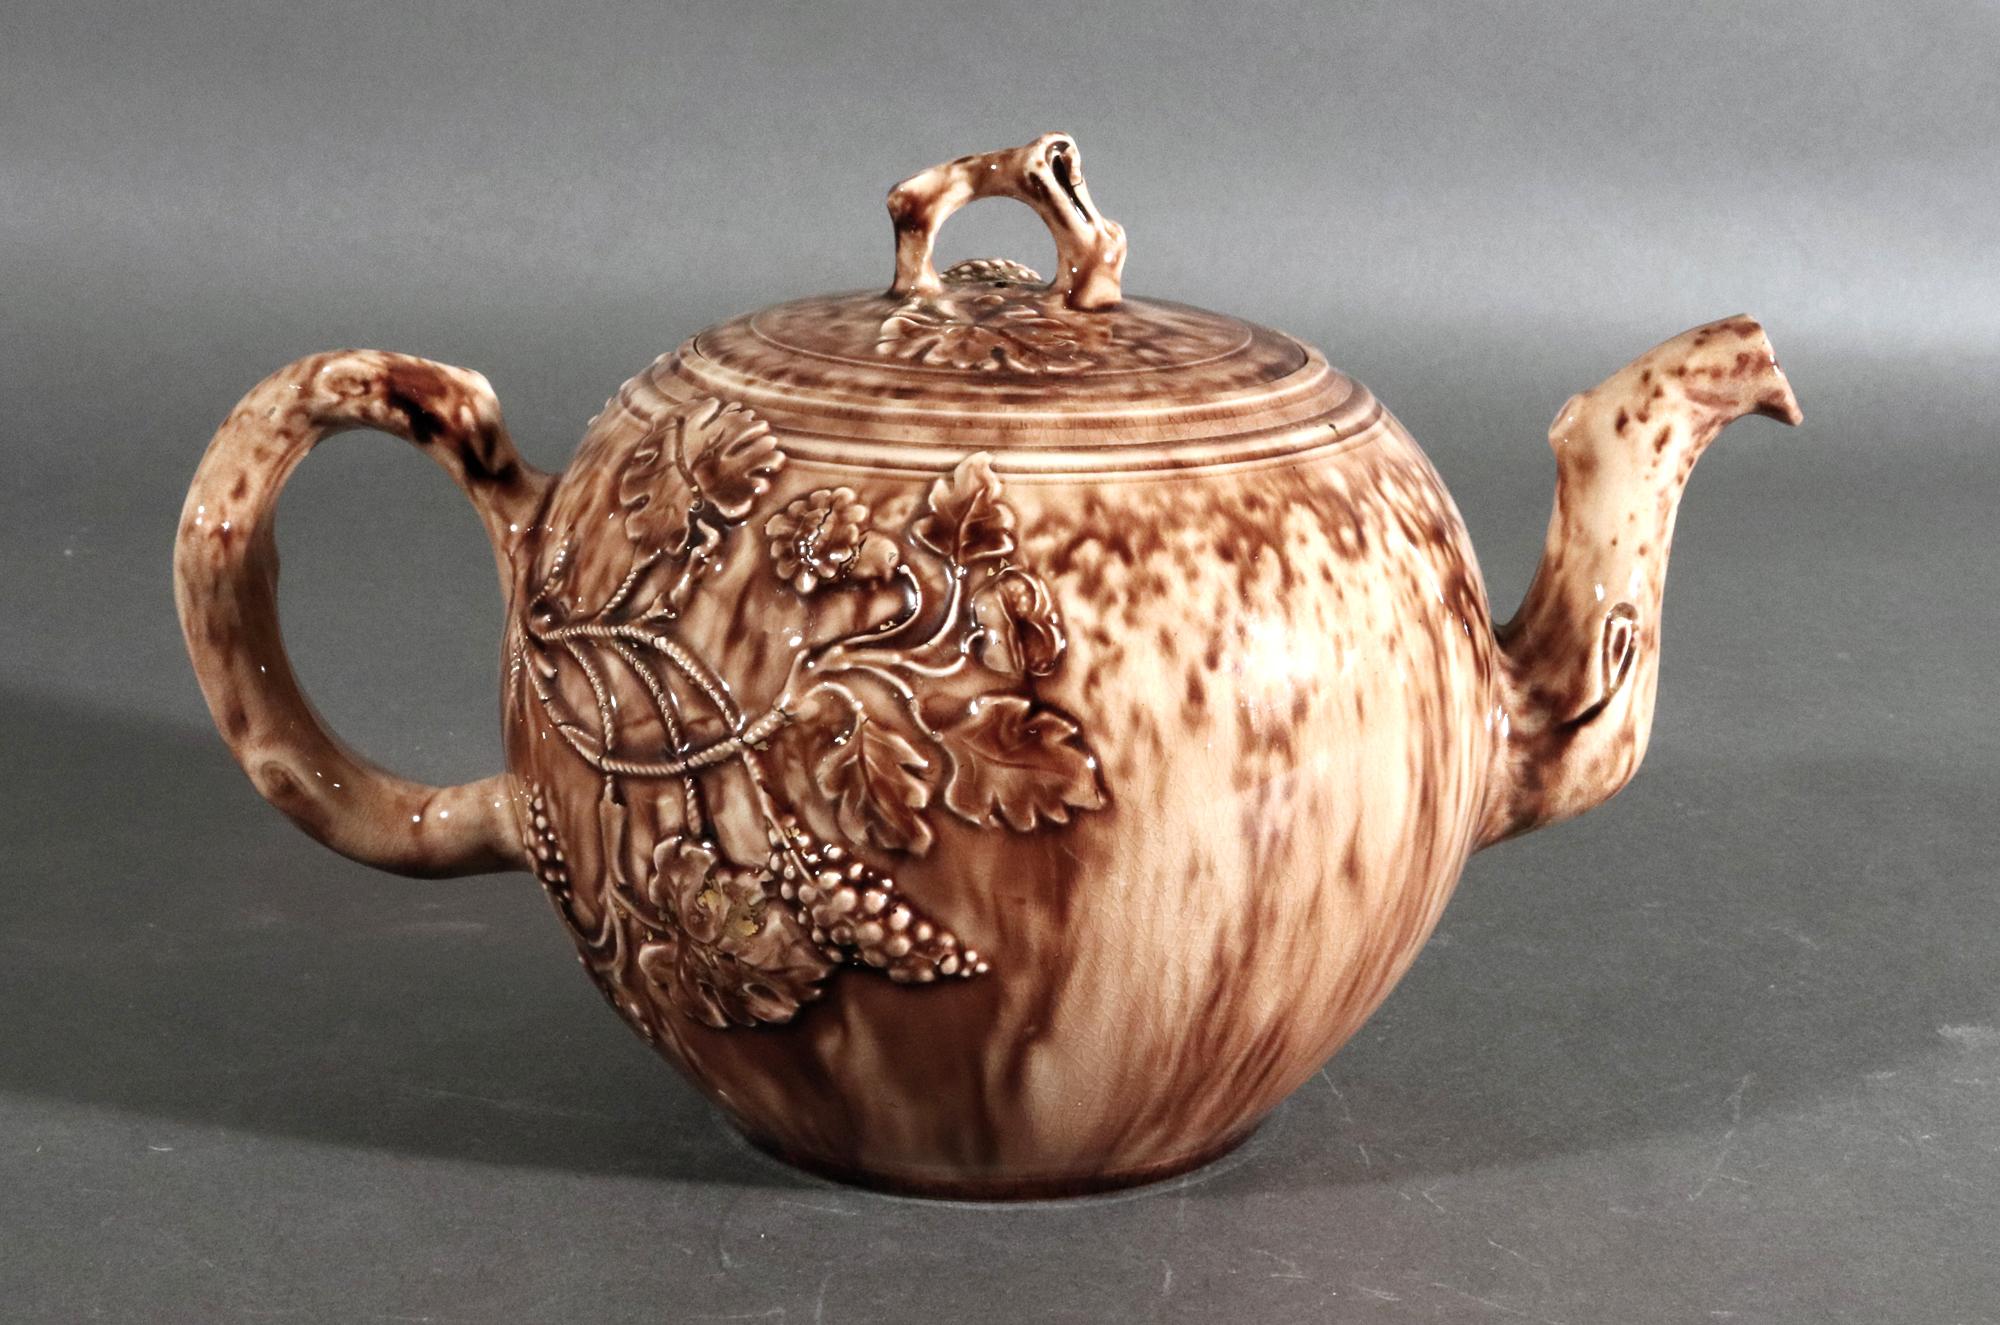 Whieldon-Typ Schildpatt-Teekanne und Deckel aus dem 18. Jahrhundert,
CIRCA 1765

Die aus Schildpatt geformte Teekanne und der Deckel sind mit einem geformten Muster aus Trauben und Blättern verziert, die von der Spitze des Henkels ausgehen, wobei